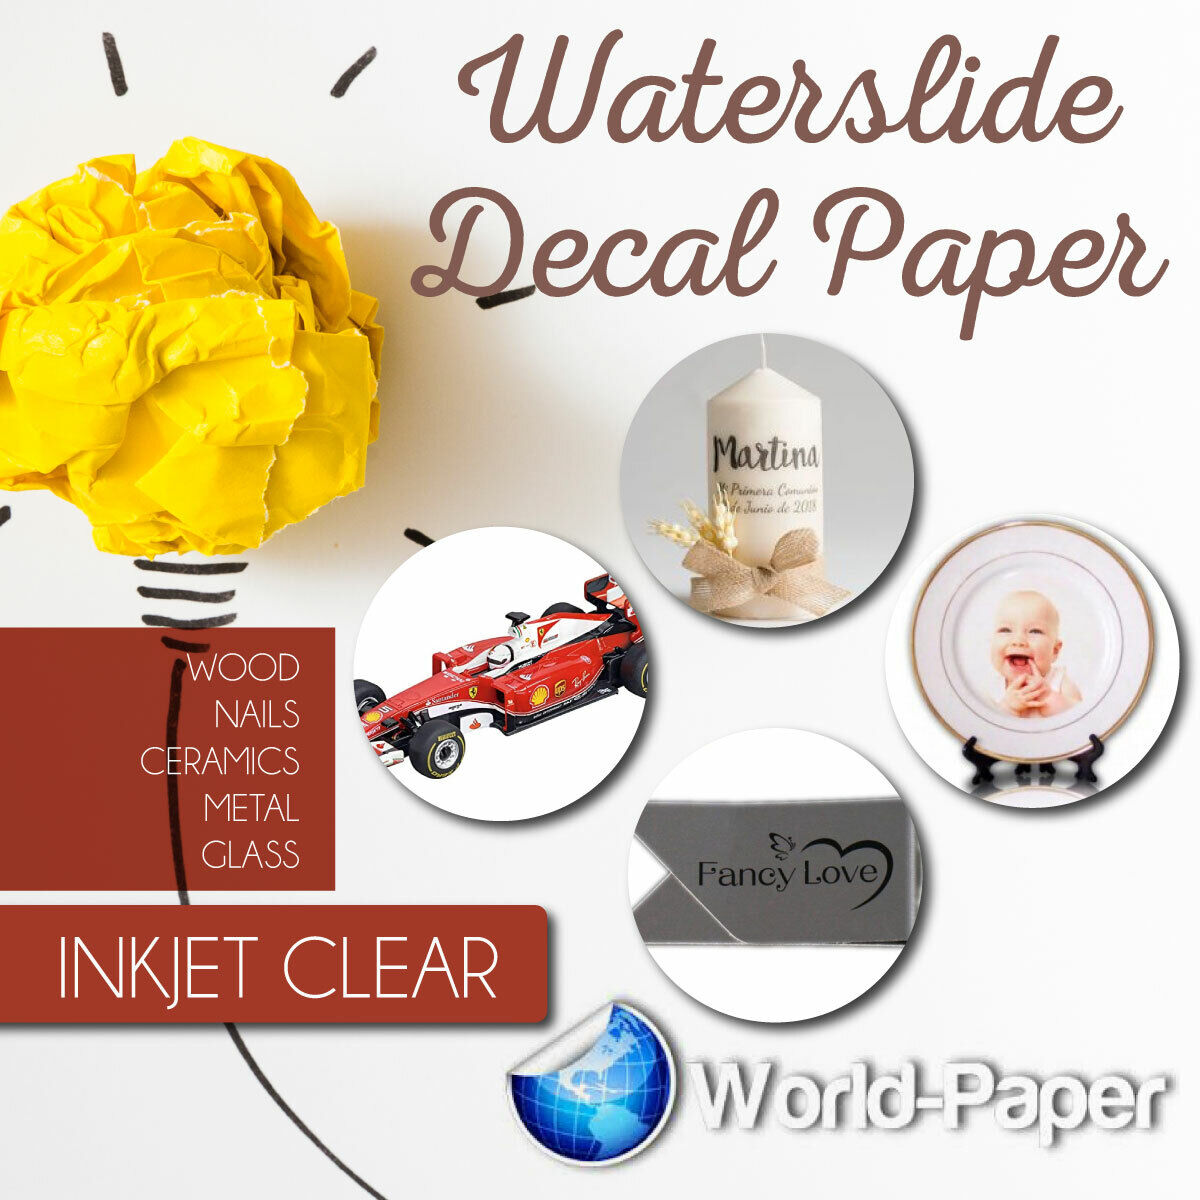 Waterslide Decal Paper INKJET CLEAR Waterslide 8.5 x 11, 50 sheets